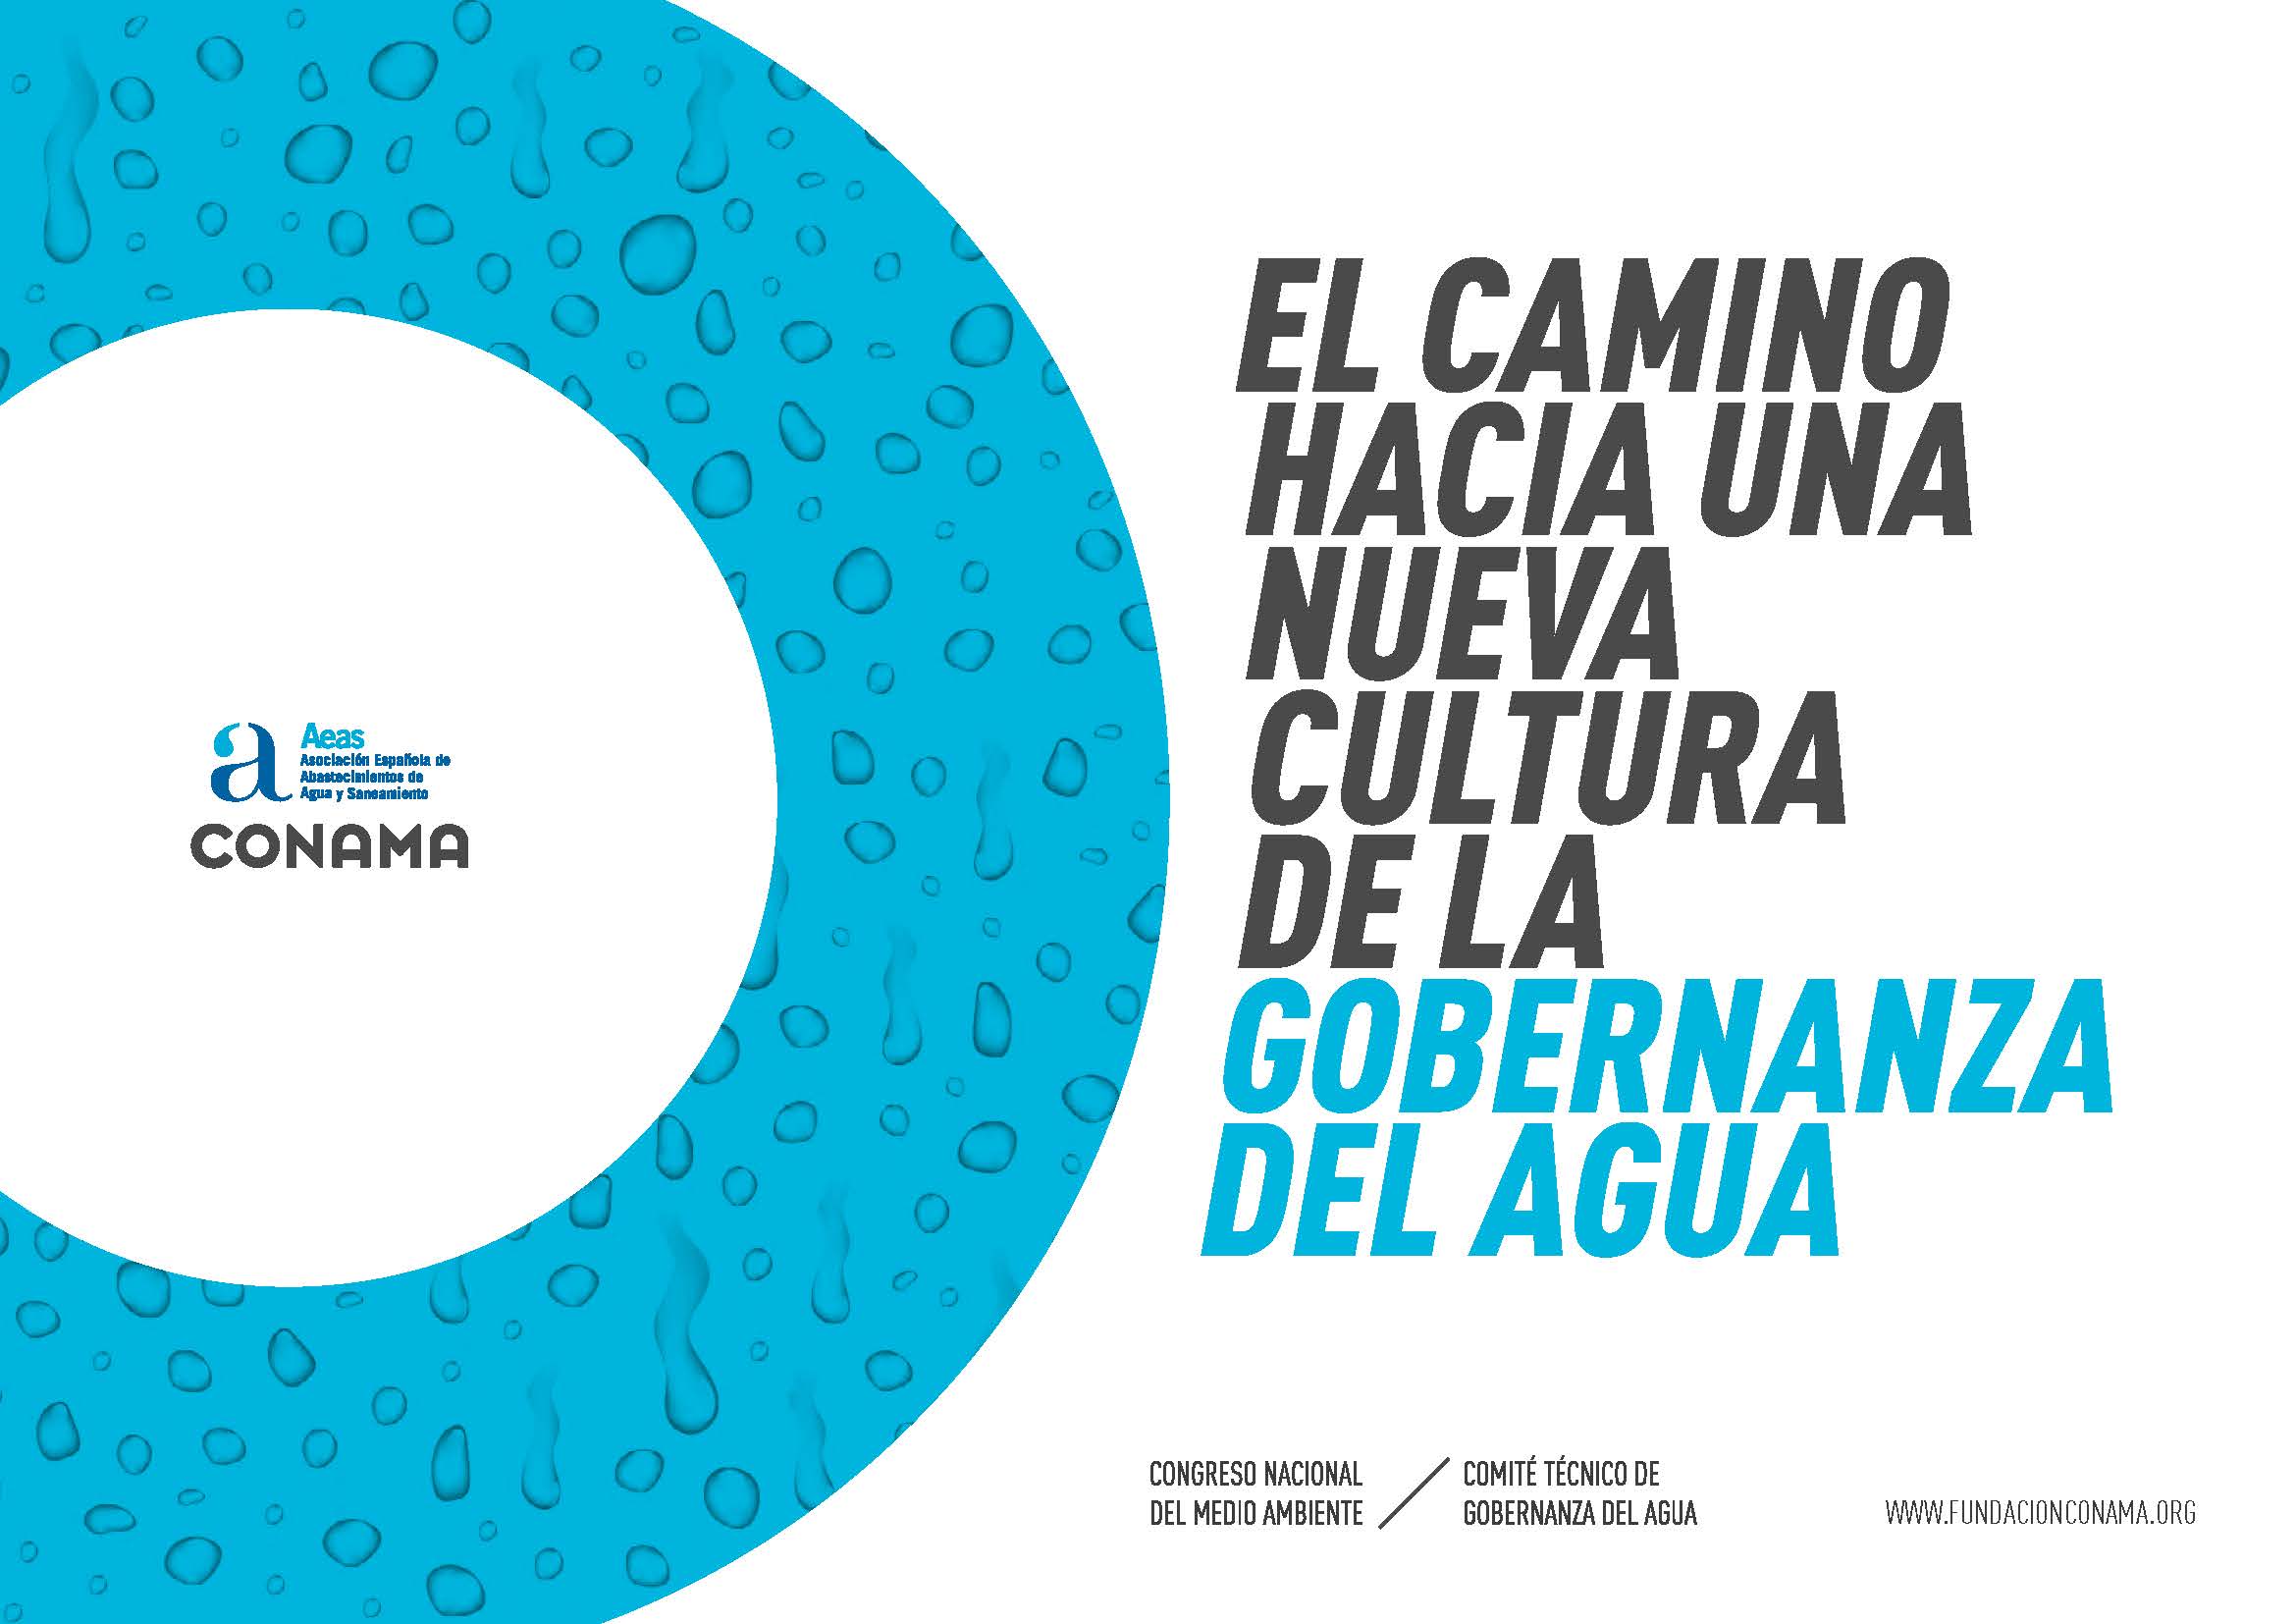 Conama y AEAS publican el informe “El camino hacia una nueva cultura de la gobernanza del agua”